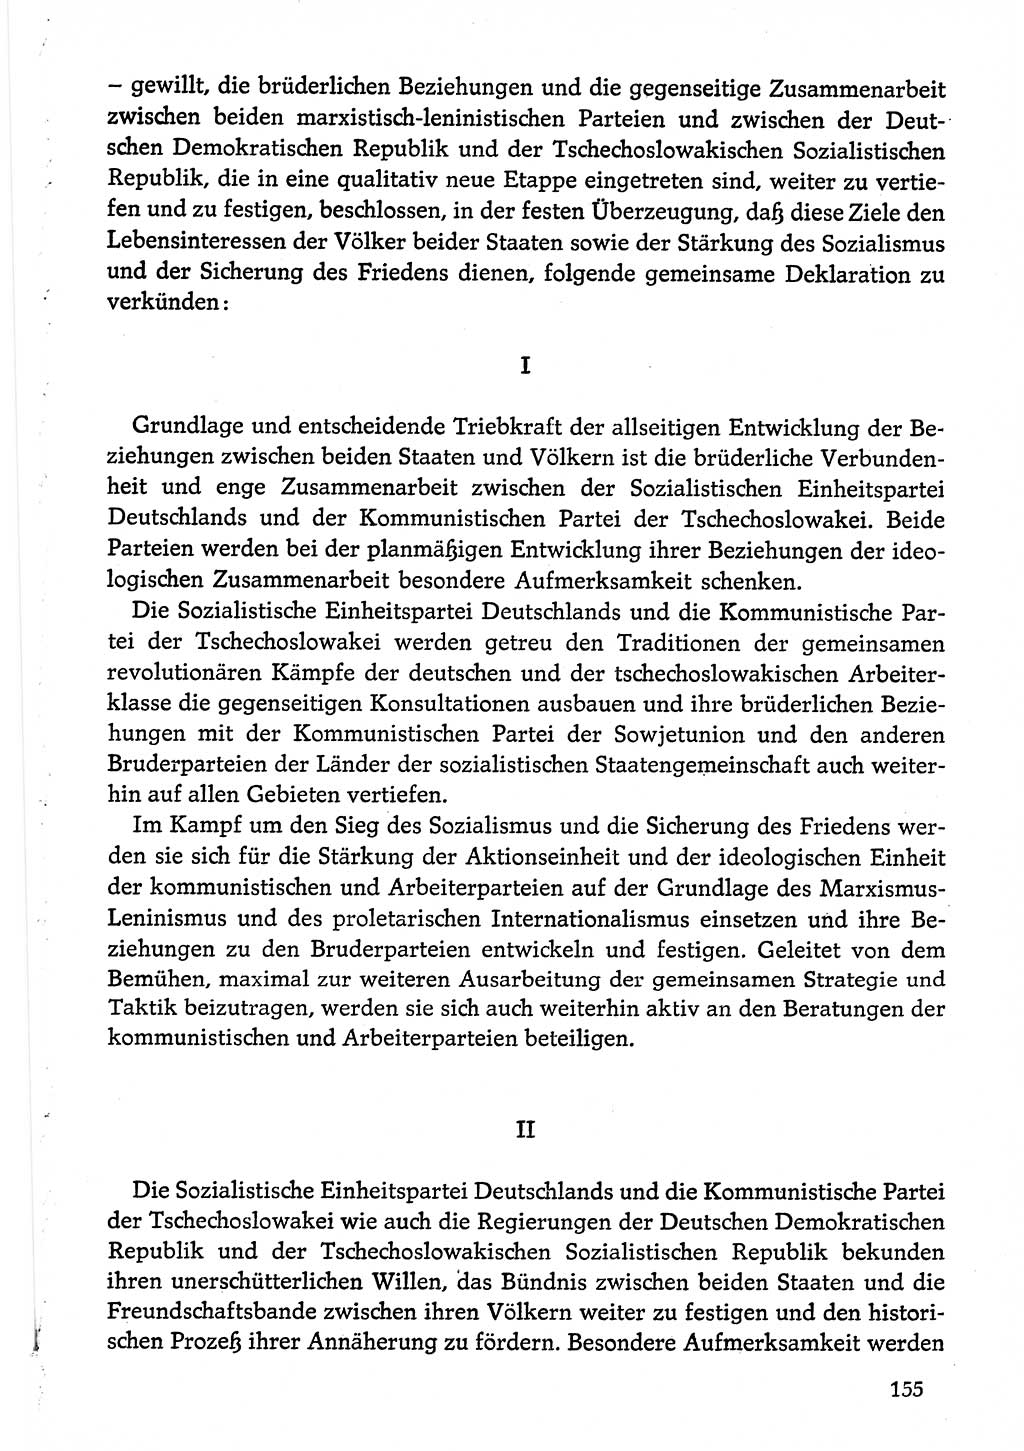 Dokumente der Sozialistischen Einheitspartei Deutschlands (SED) [Deutsche Demokratische Republik (DDR)] 1974-1975, Seite 155 (Dok. SED DDR 1978, Bd. ⅩⅤ, S. 155)